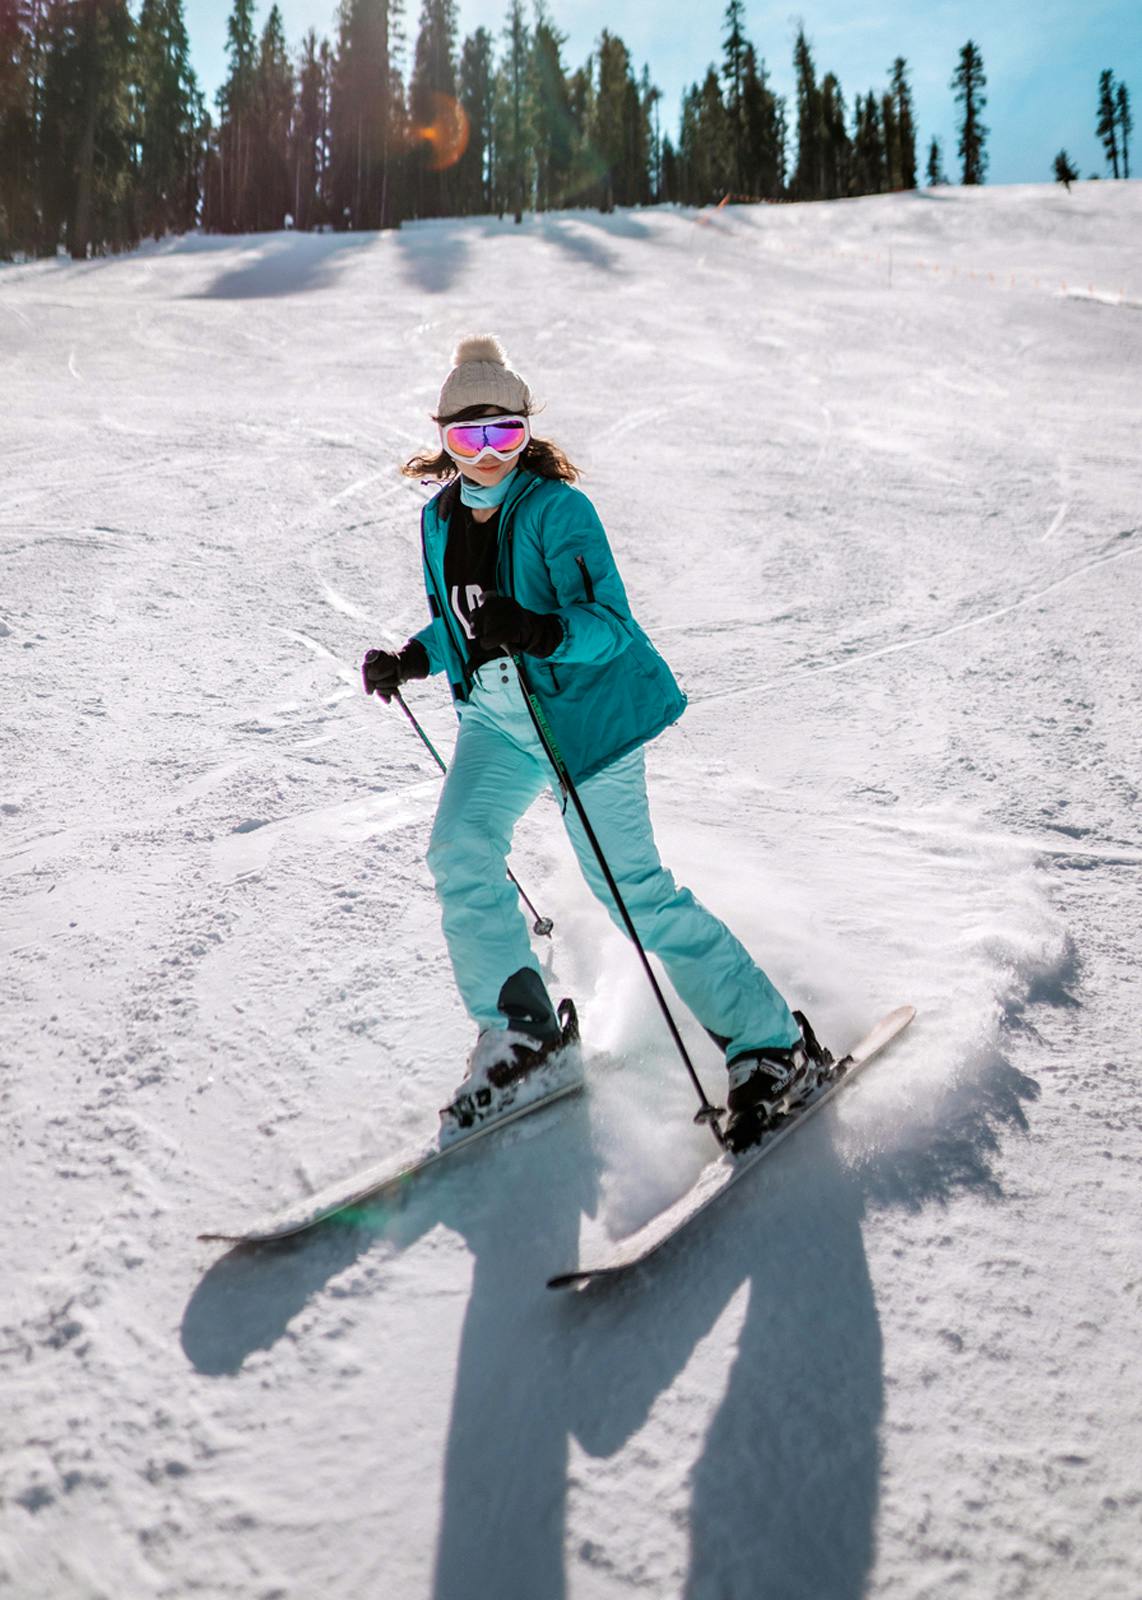 Women's Ski Clothes: Ski Outfits & Clothing for Women